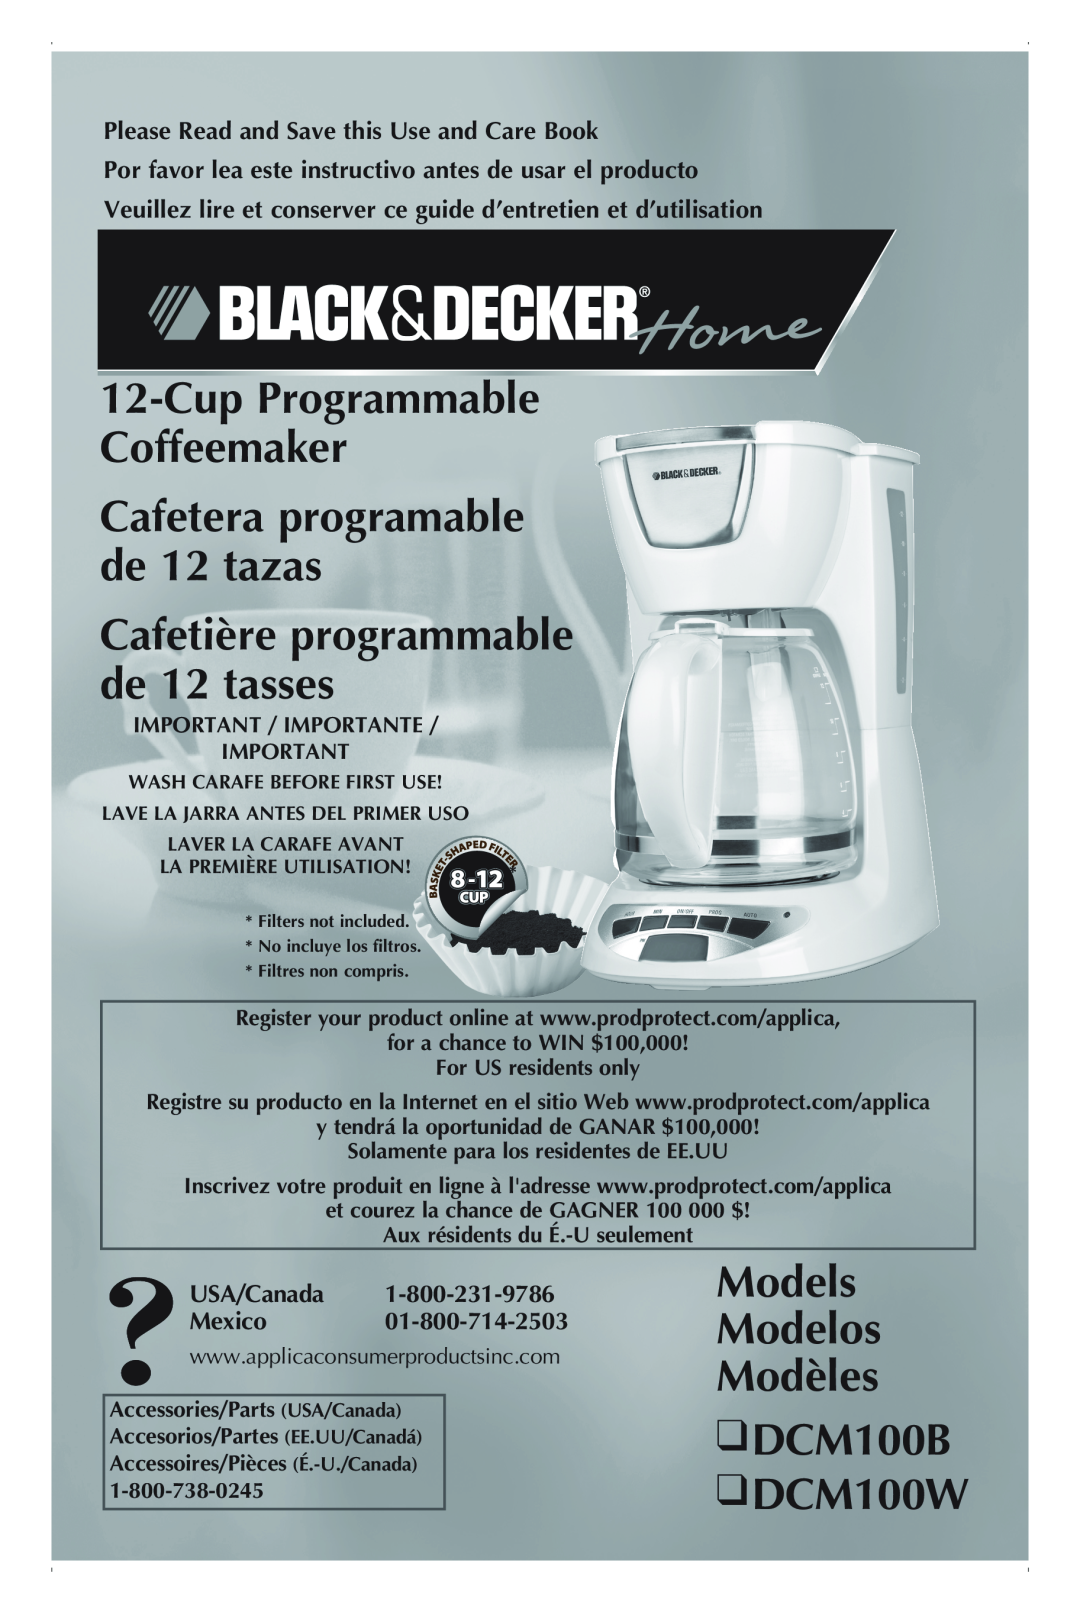 Black & Decker manual Models Modelos Modèles DCM100B DCM100W, Cafetière programmable de 12 tasses, USA/Canada Mexico 